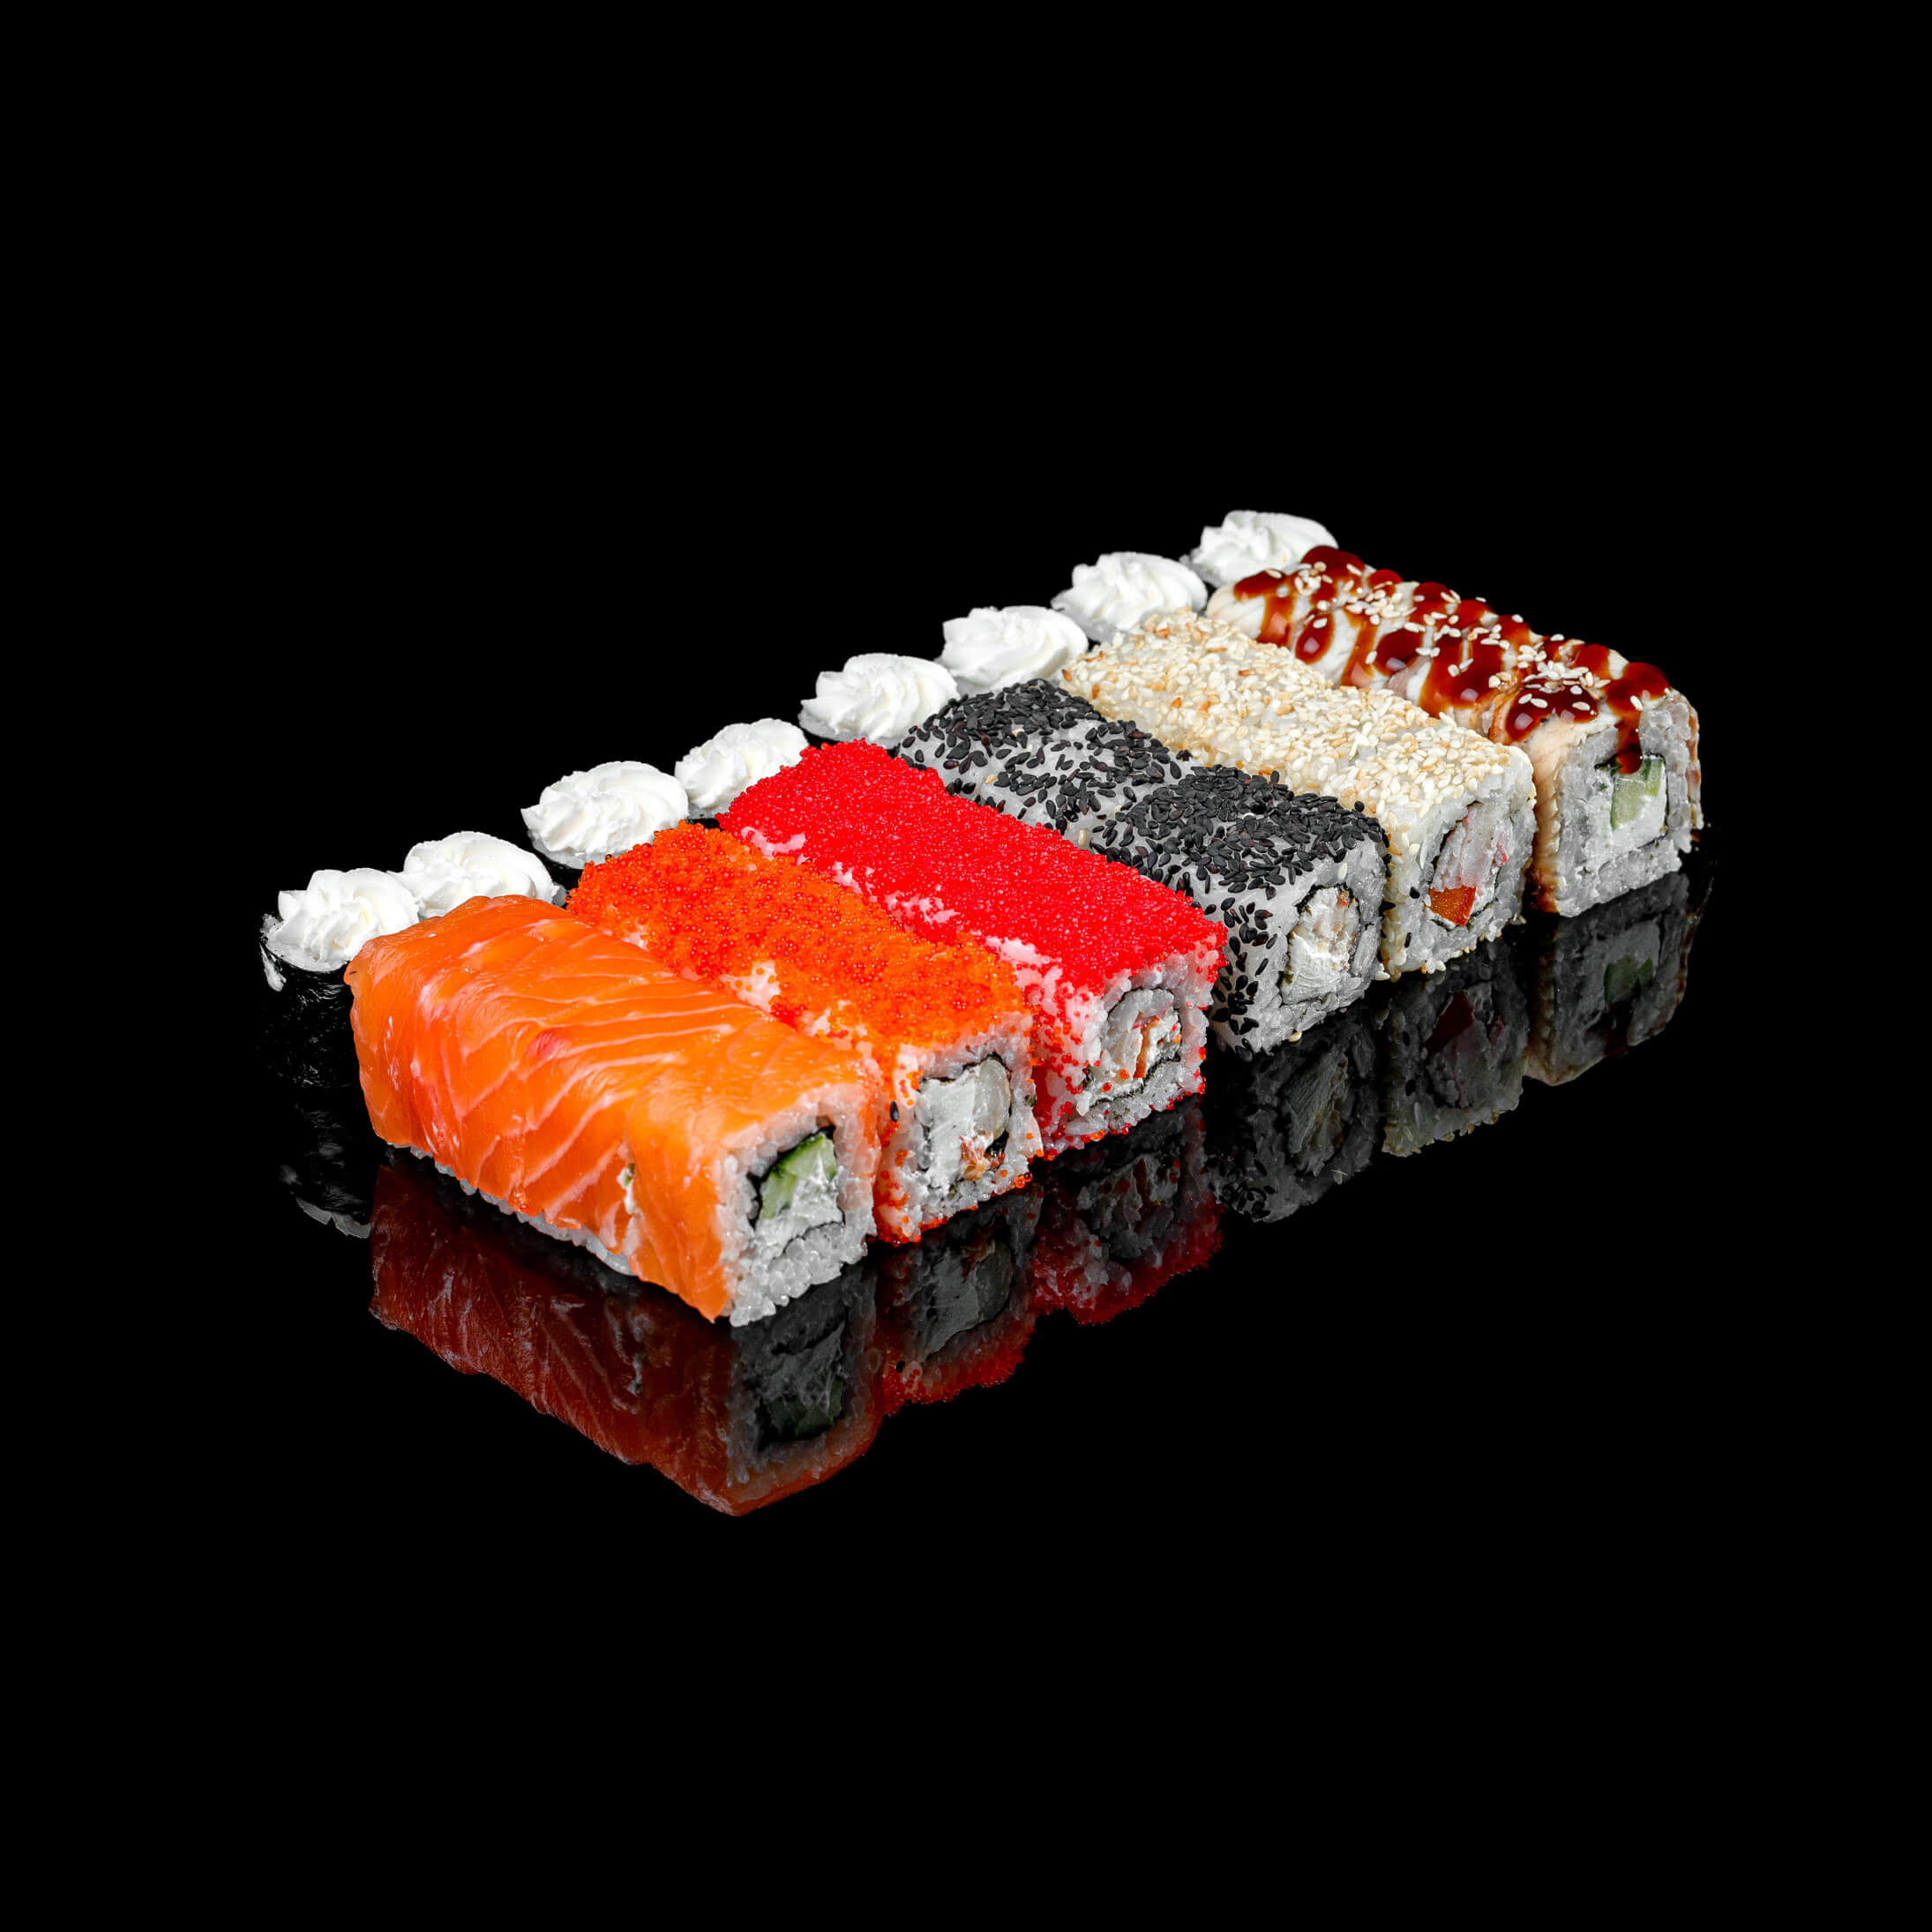 Заказать сеты суши в севастополе фото 76